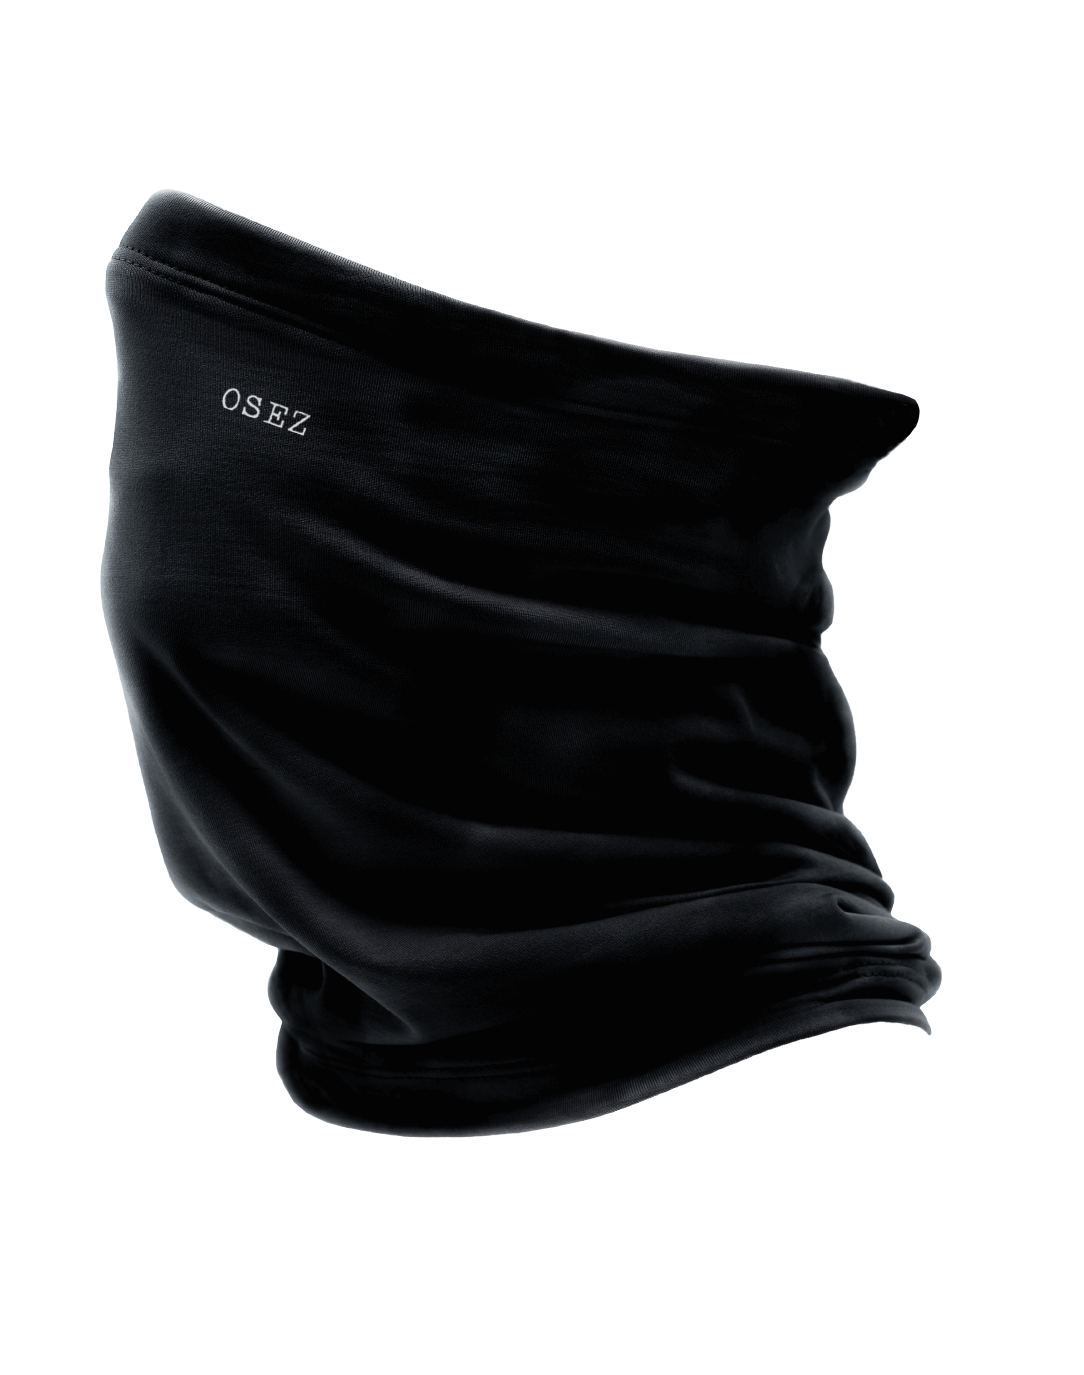 Osez - Winter Community Mask Black - Nahmoo